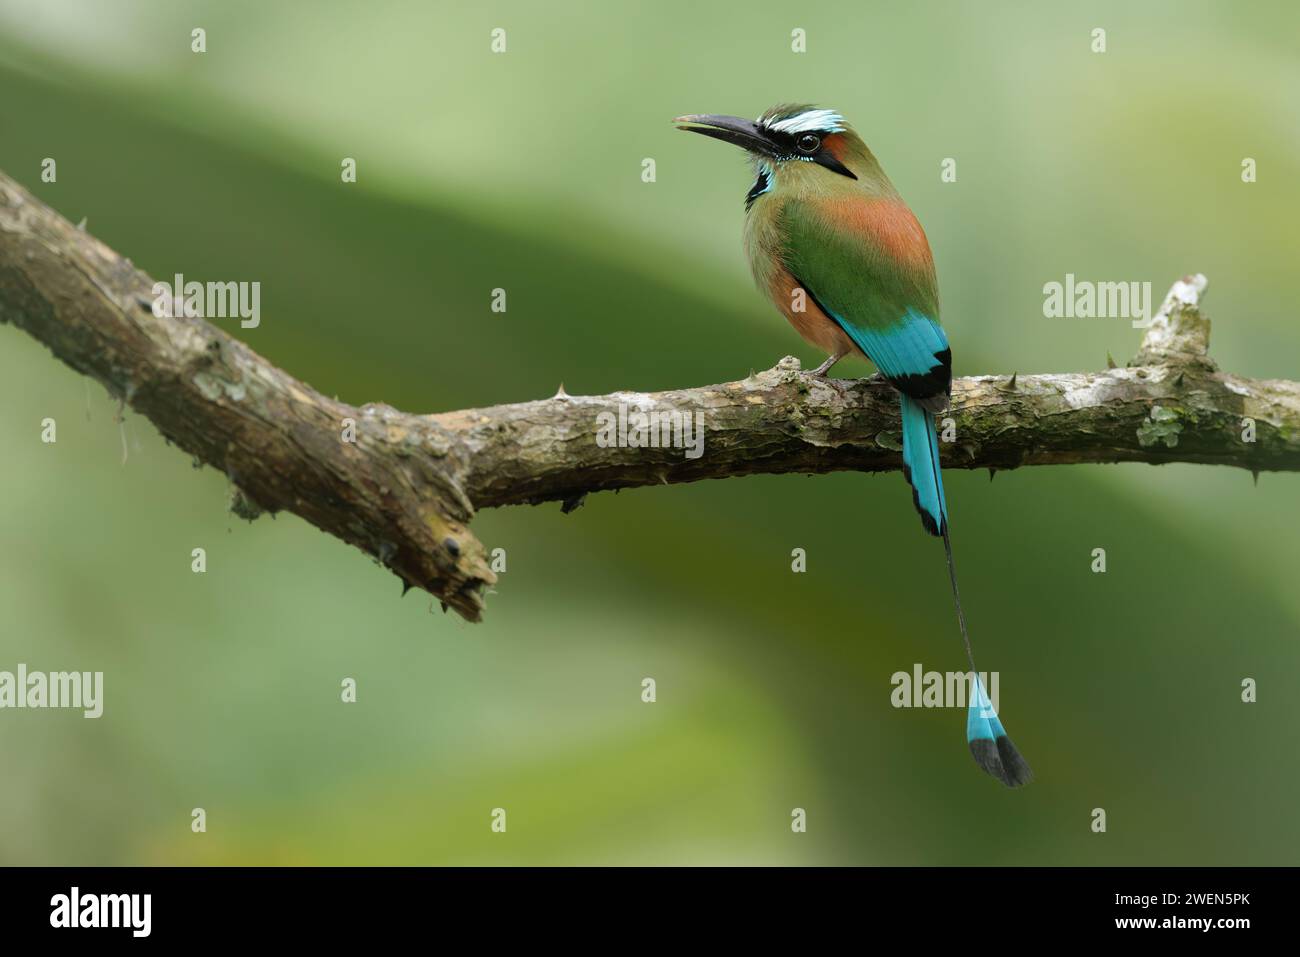 Hochgezogenes, türkisfarbenes Motmot in natürlicher Umgebung. Regenwald von Costa Rica. Vogel mit wunderschönen, lebendigen Farben. Stockfoto